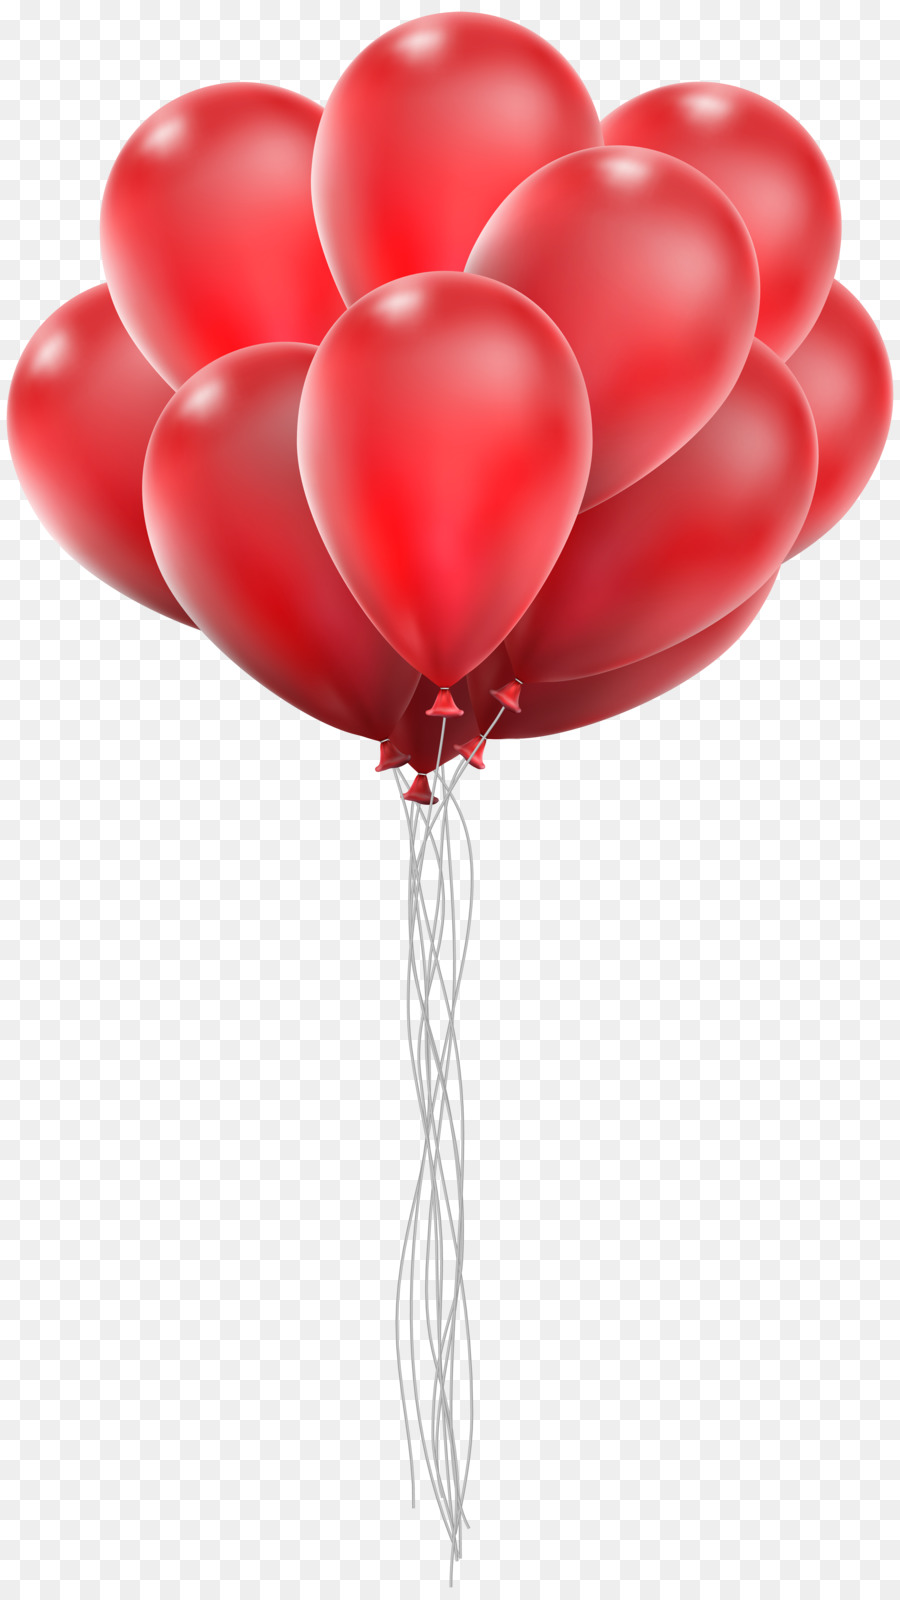 Ballon-Portable-Network-Graphics-Clip-art-Grafik-Vektor-Grafiken - Ballon